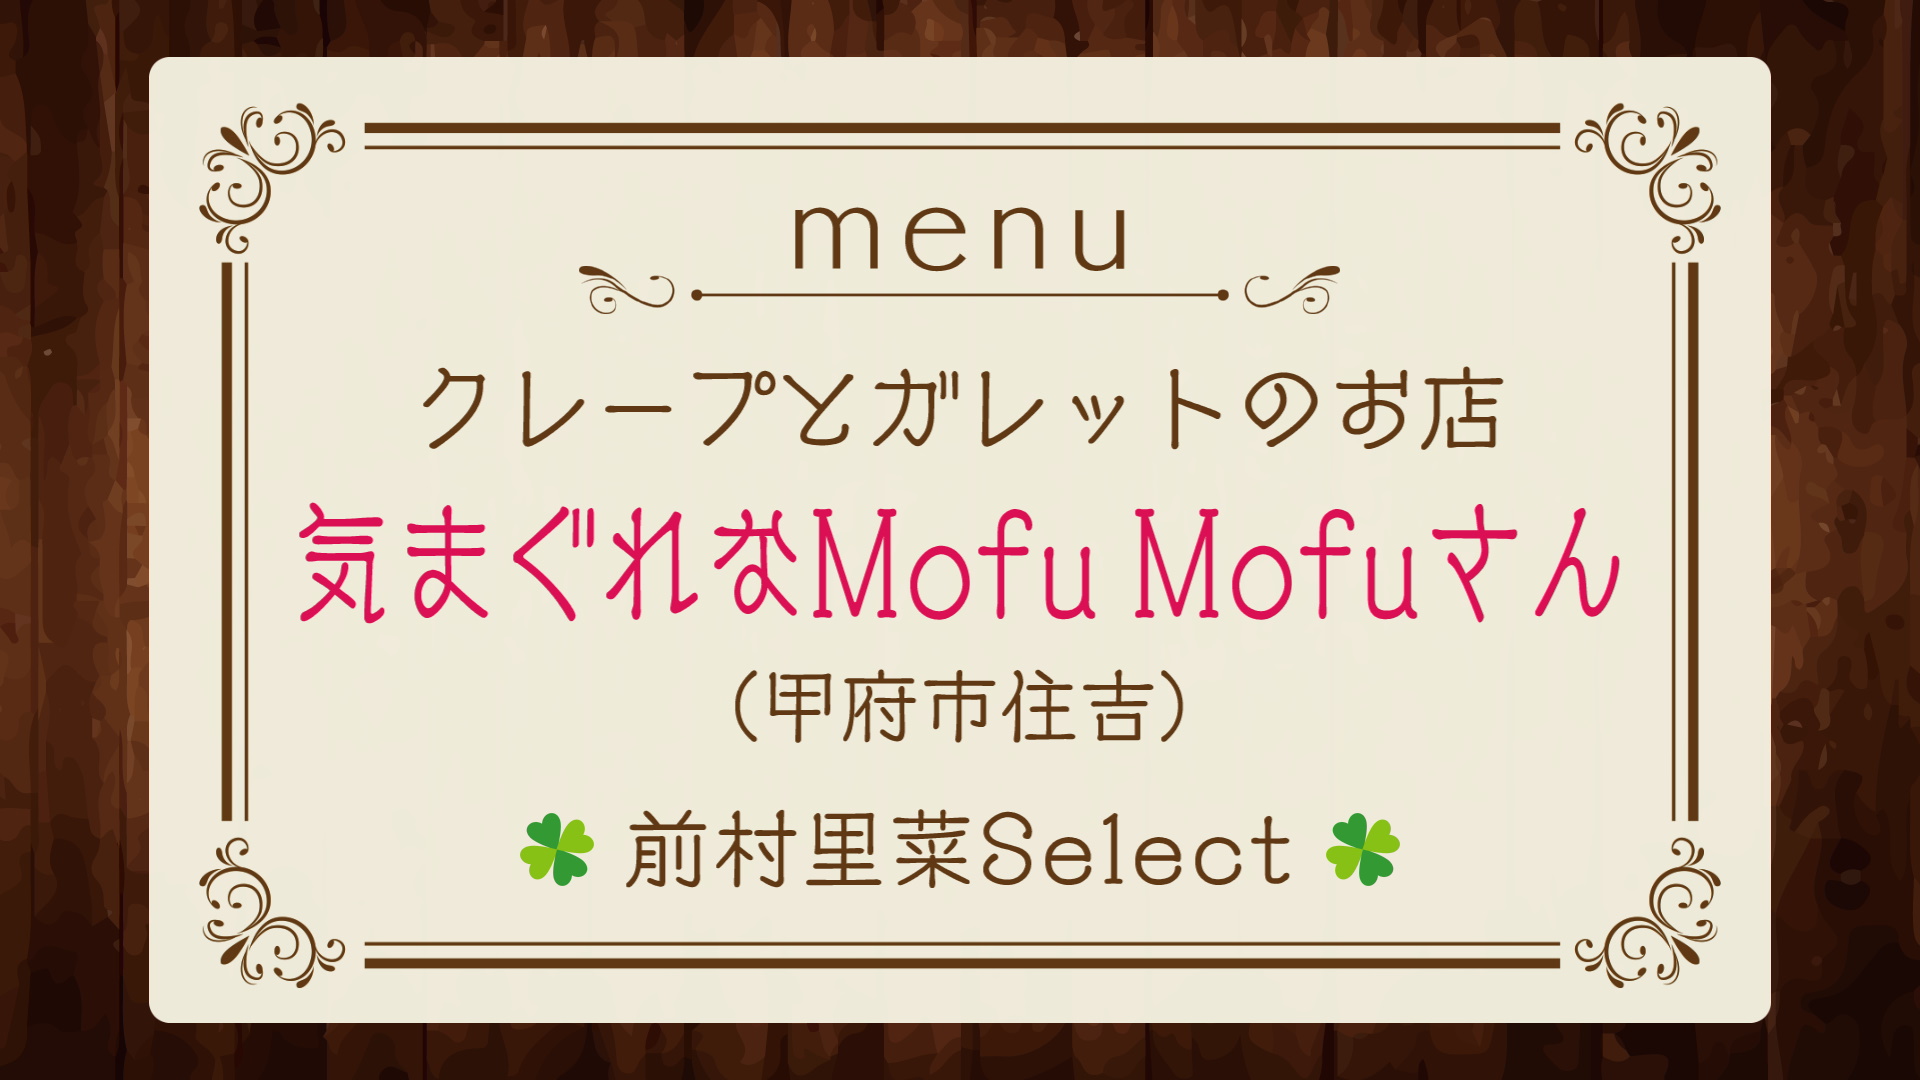 『しあわせ食堂』は「気まぐれなMofu Mofuさん」♪